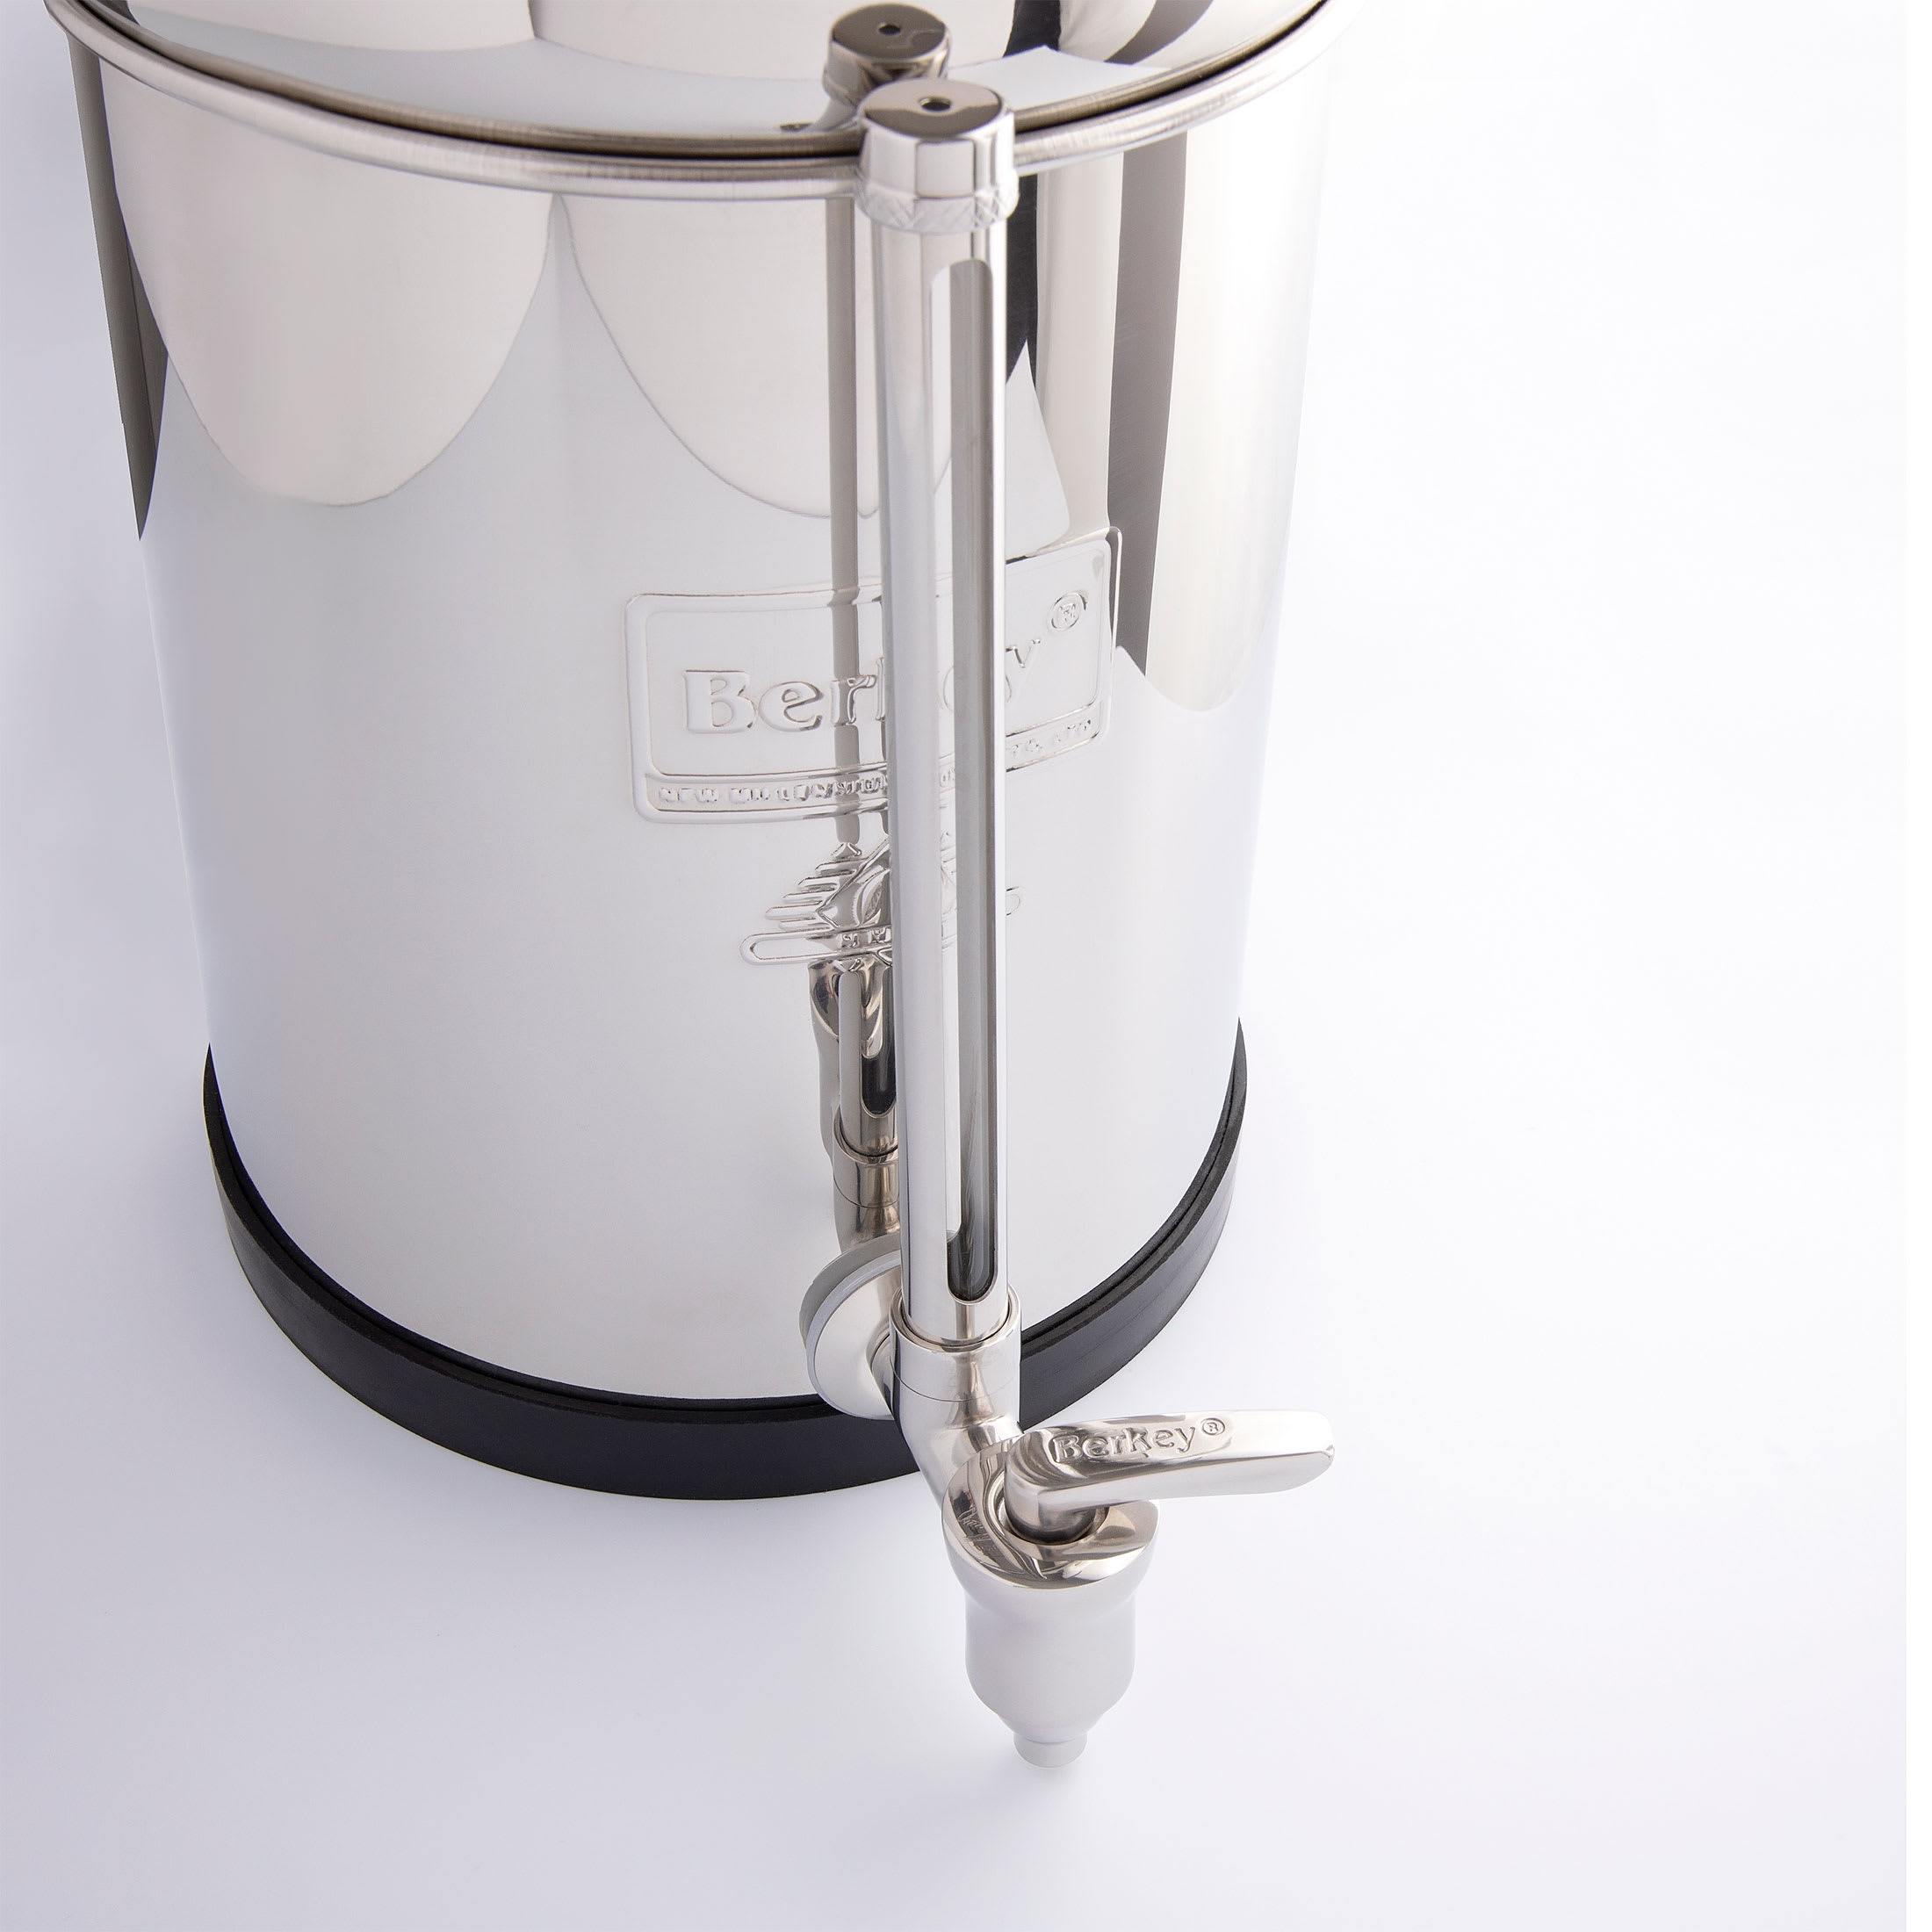 Robinet inox pour filtre à eau Berkey® - Berkey® France Millenium